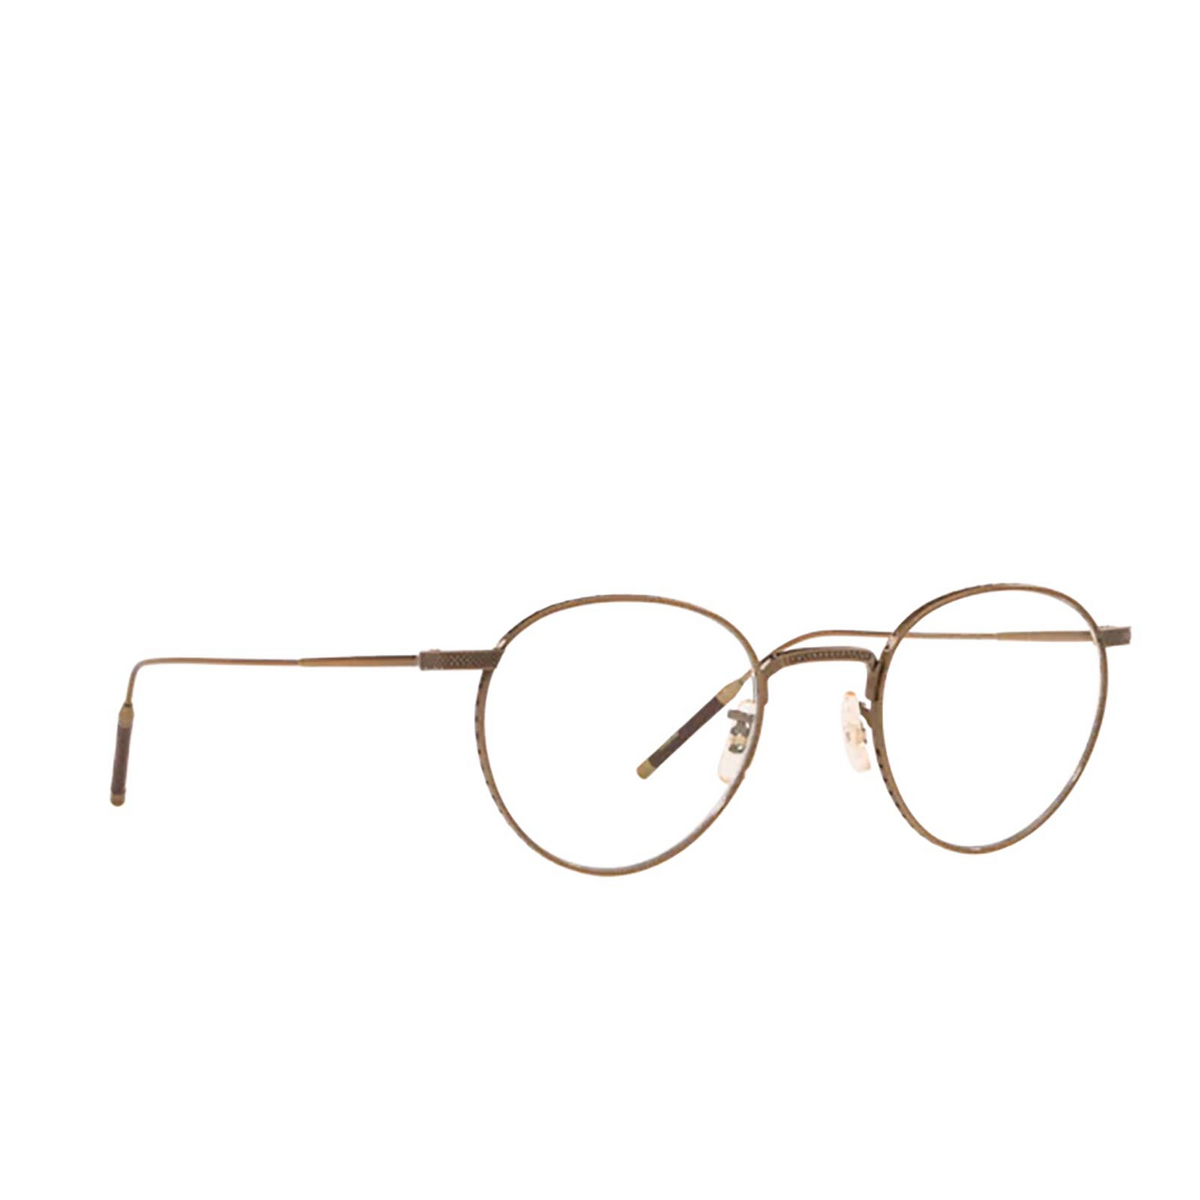 Oliver Peoples® Round Eyeglasses: OV1274T color Antique Gold 5284 - 2/3.